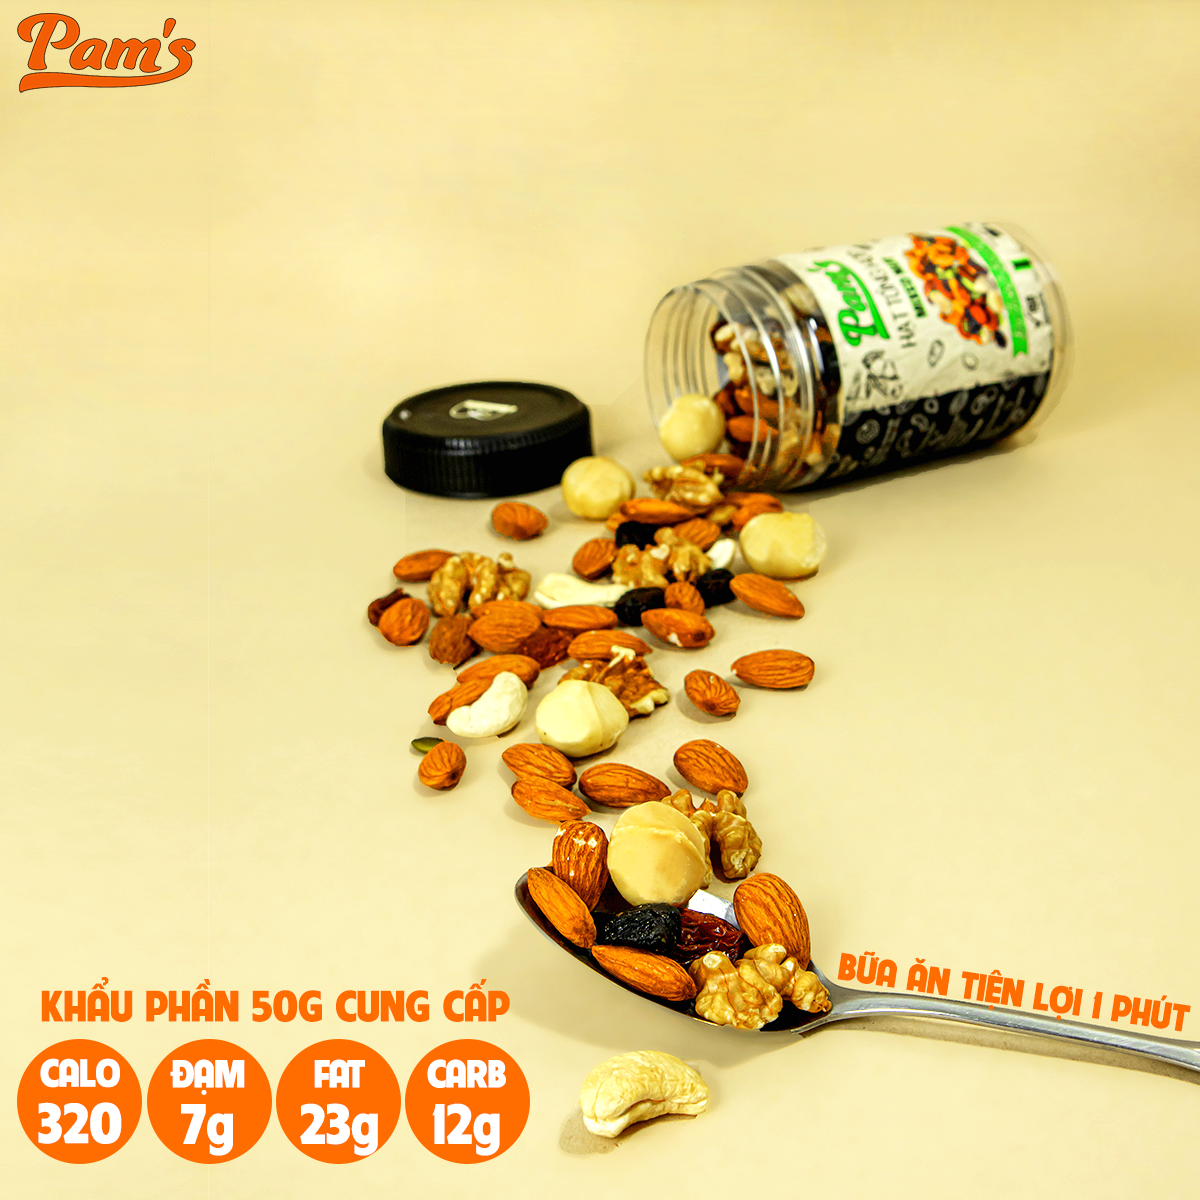 COMBO TIẾT KIỆM - 3 hũ hạt tổng hợp mix 6 loại(macca + hạnh nhân + nhân óc chó + hạt điều + hạt bí + nho khô) Pams 270g/hũ